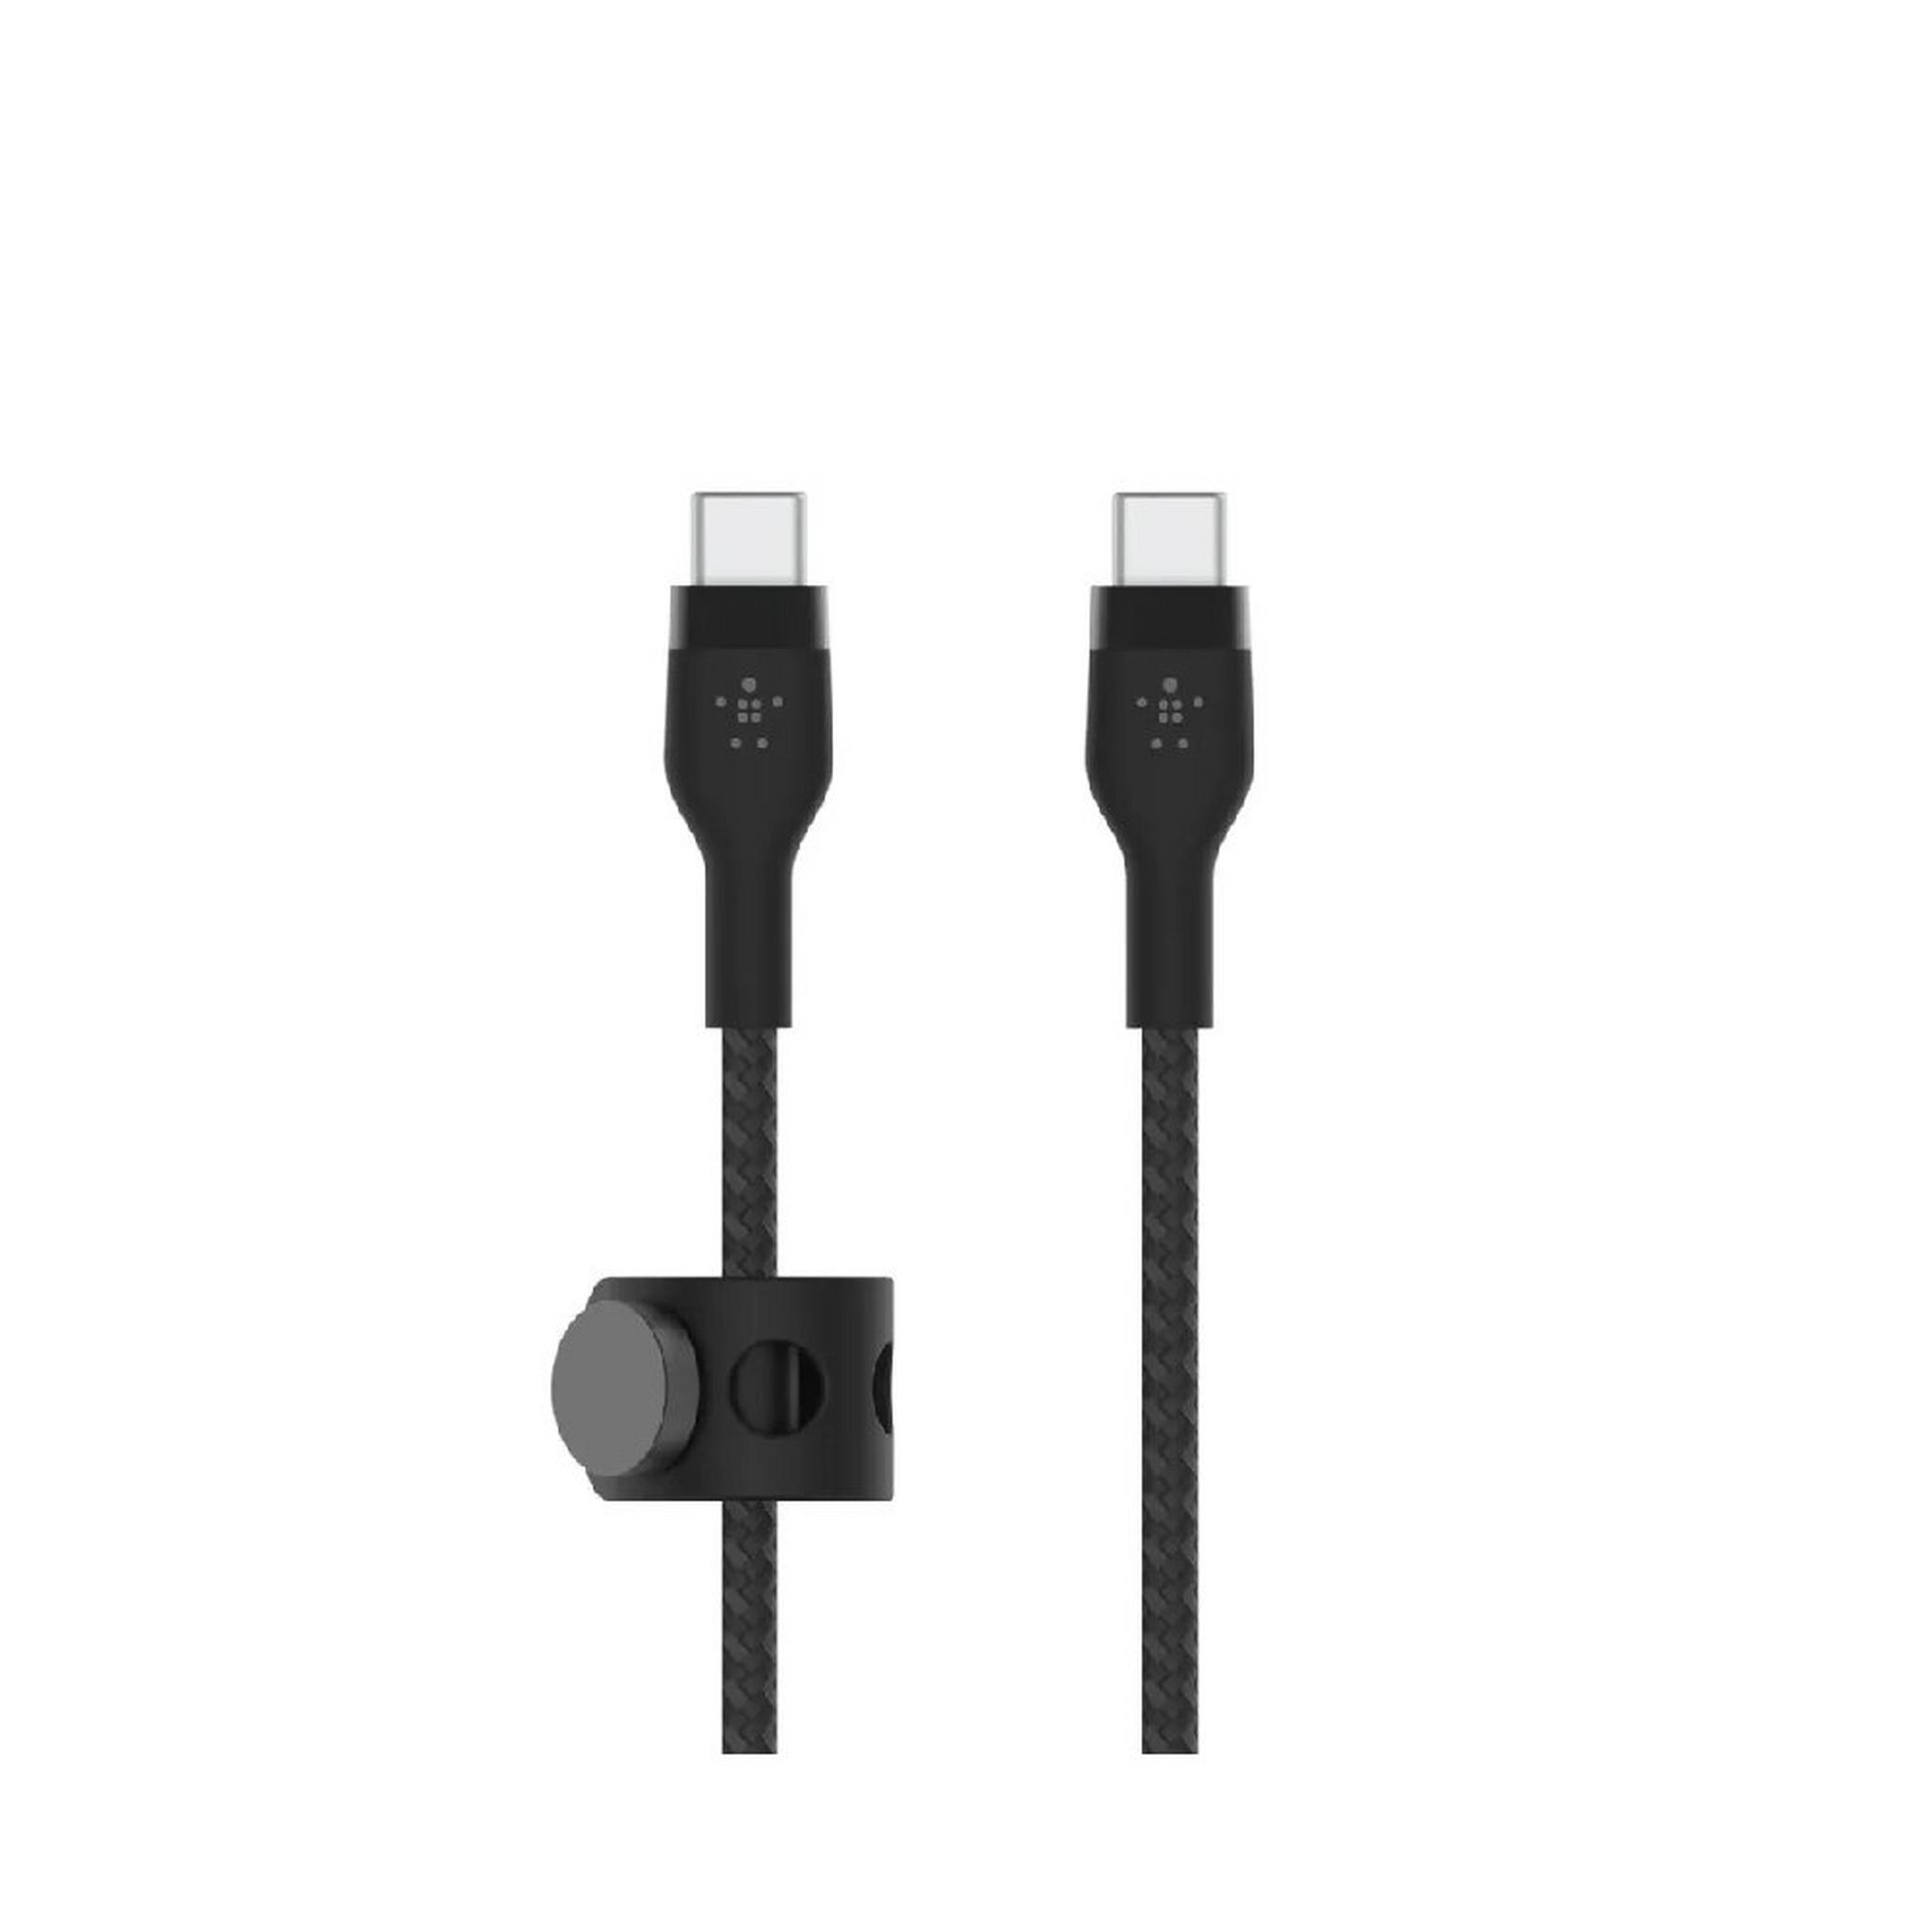 BELKIN Boostcharge Pro Flex USB-C To USB-C Cable, 1M, CAB011bt1MBK – Black